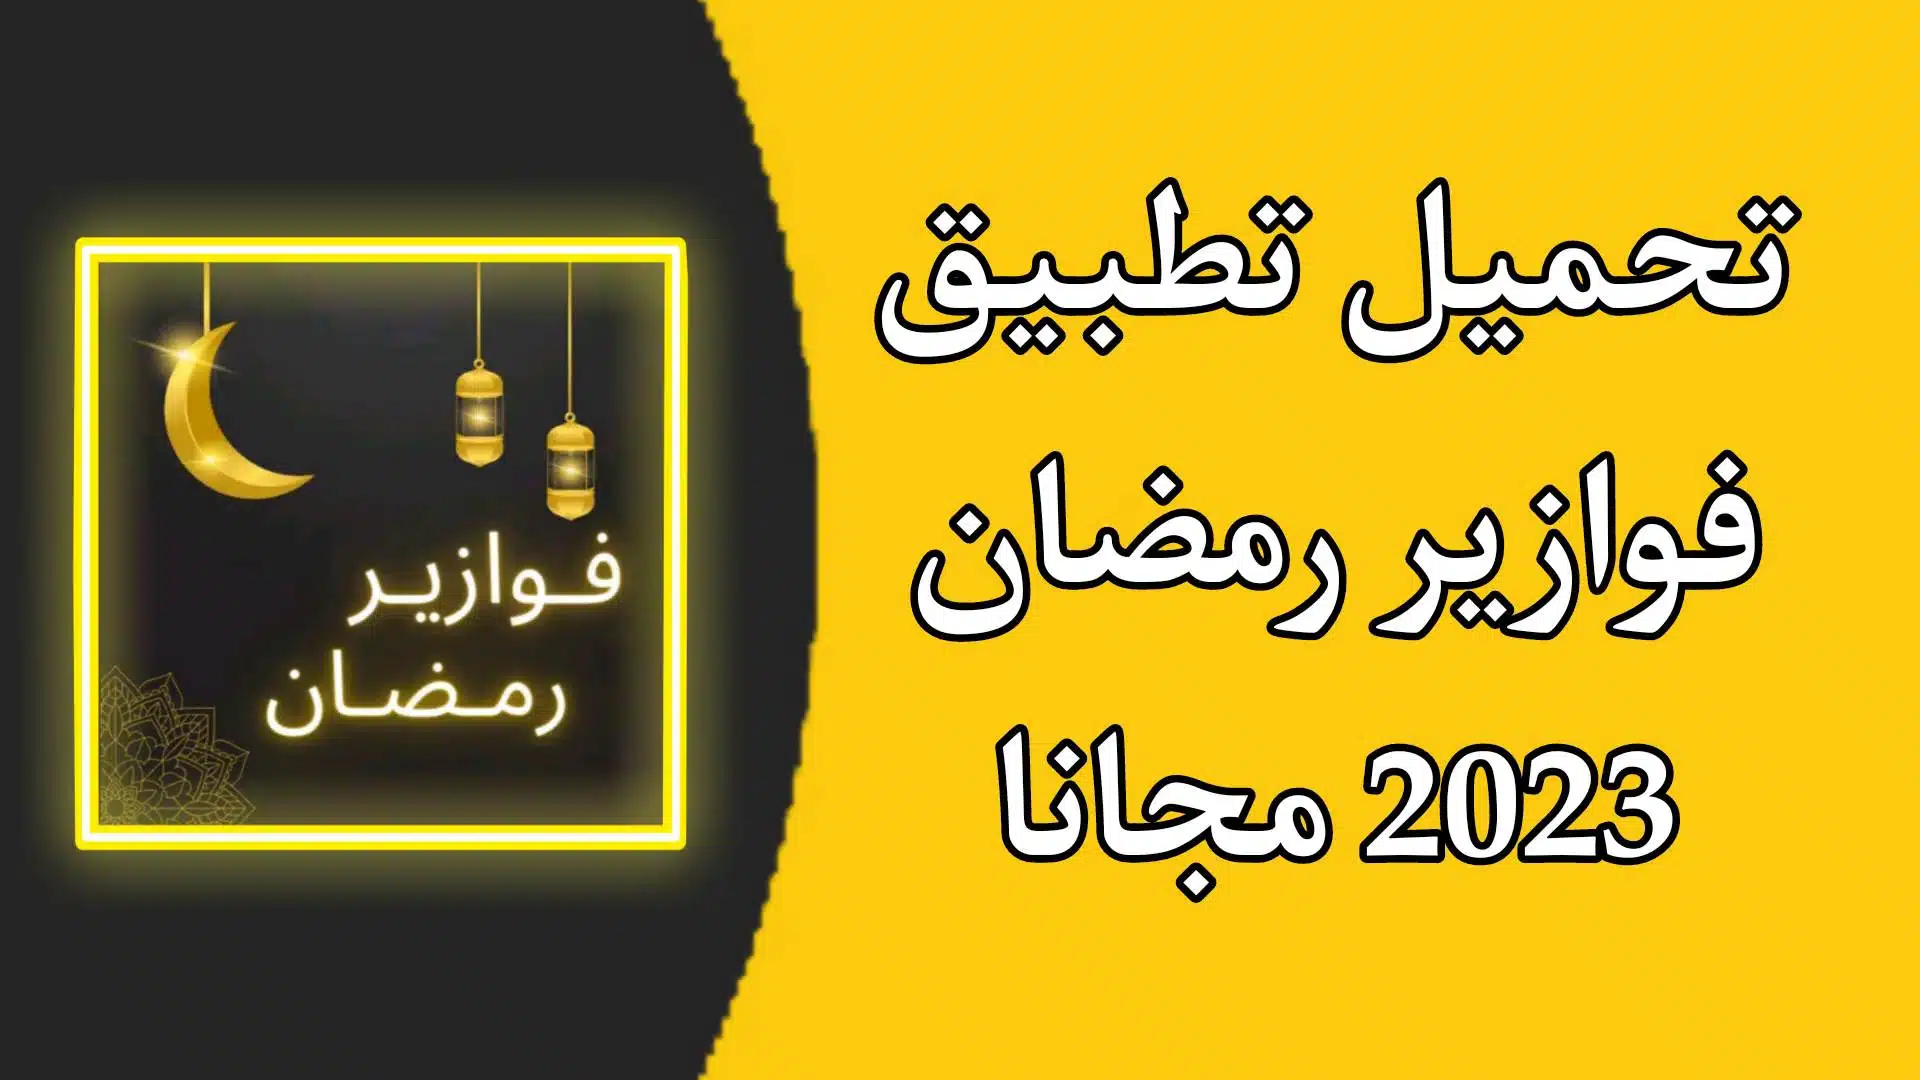 تحميل تطبيق فوازير رمضان 2023 بدون نت fawazer للاندرويد مجانا APK